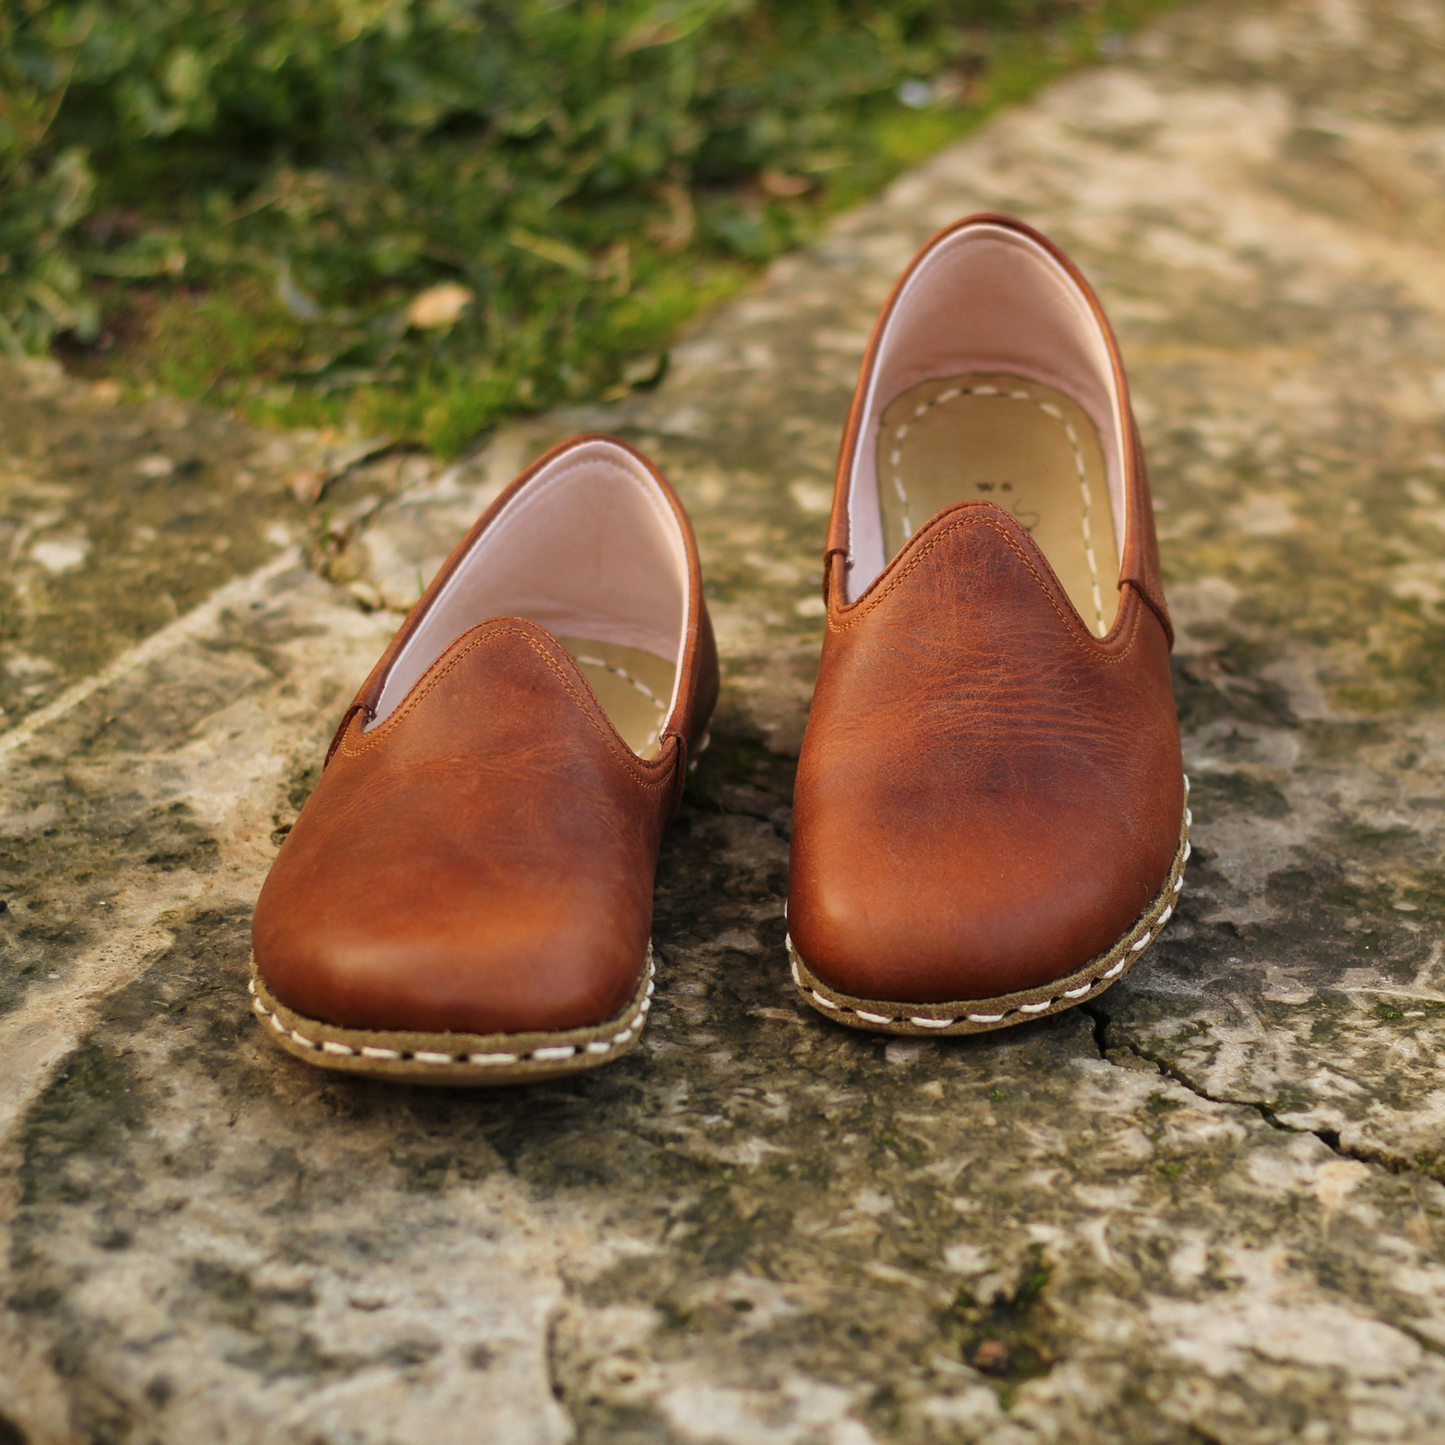 Handmade Leather Barefoot Shoes for Men - Turkish Yemeni Style